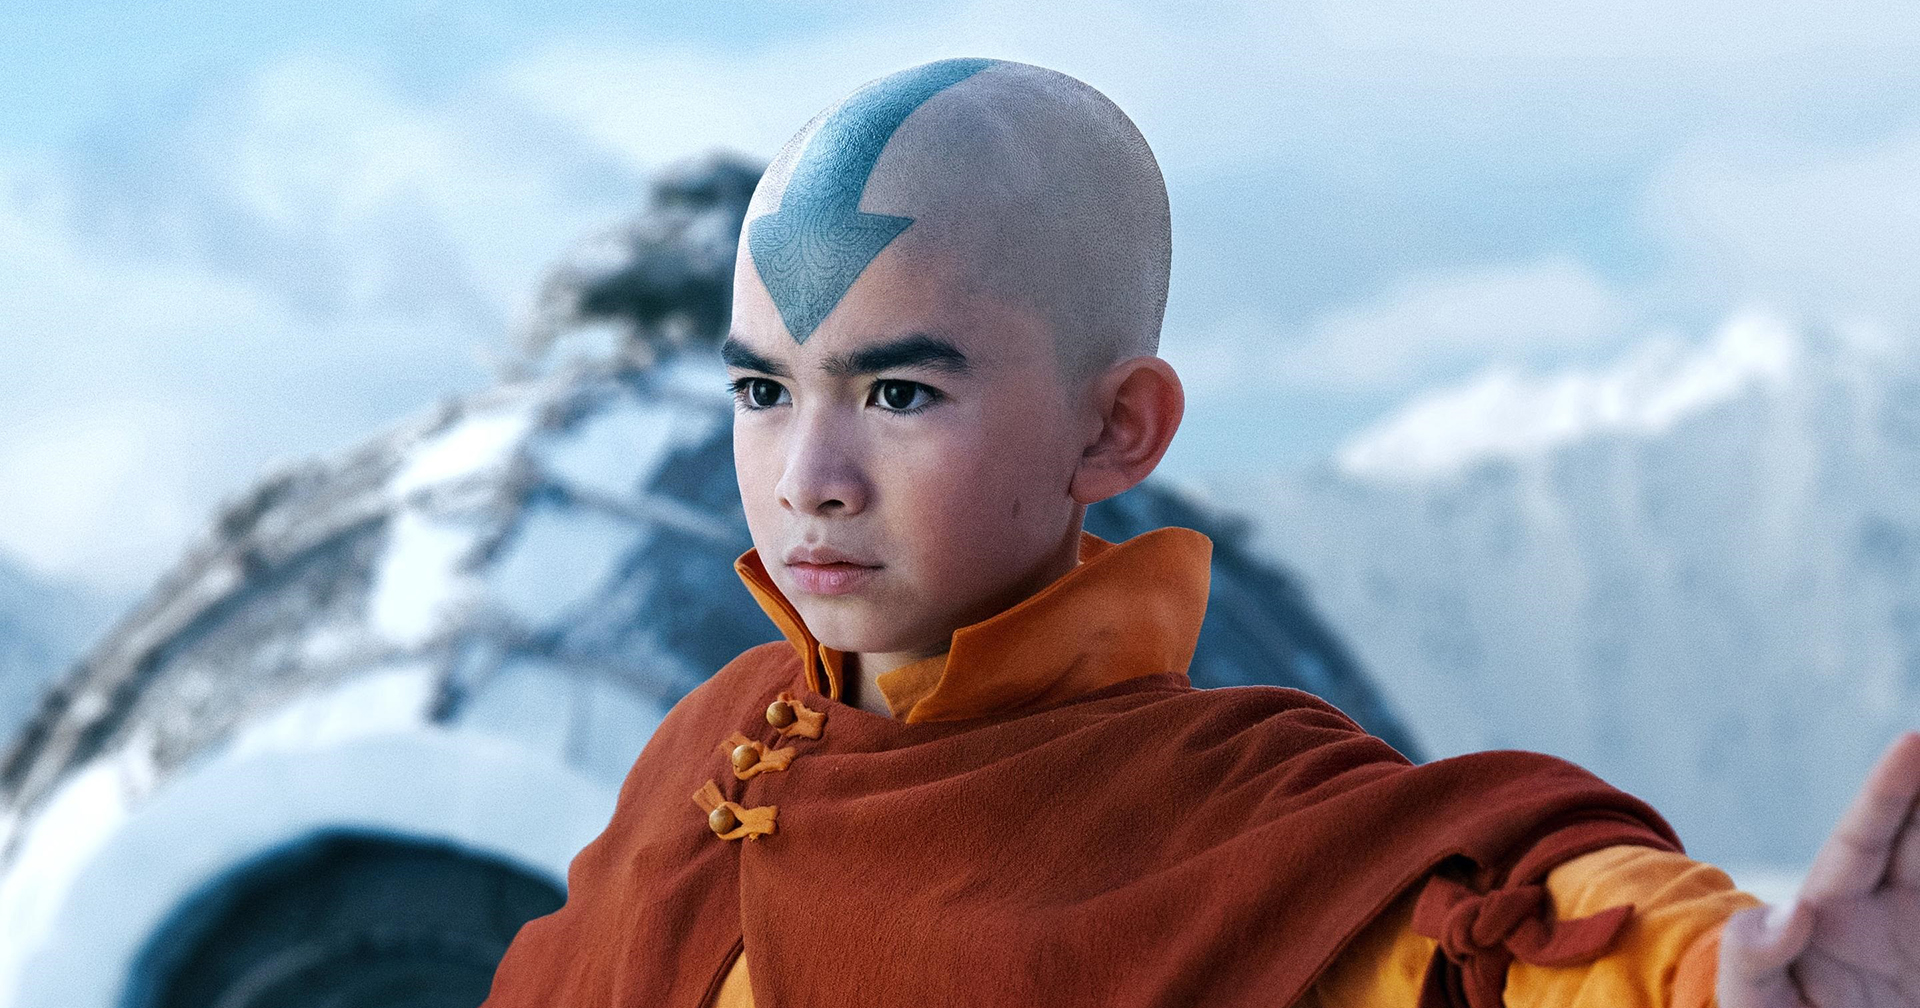 ทีเซอร์และภาพแรกซีรีส์ ‘Avatar: The Last Airbender’ ของ Netflix เผยตัวละคร Aang, Katara, Sokka และ Zuko